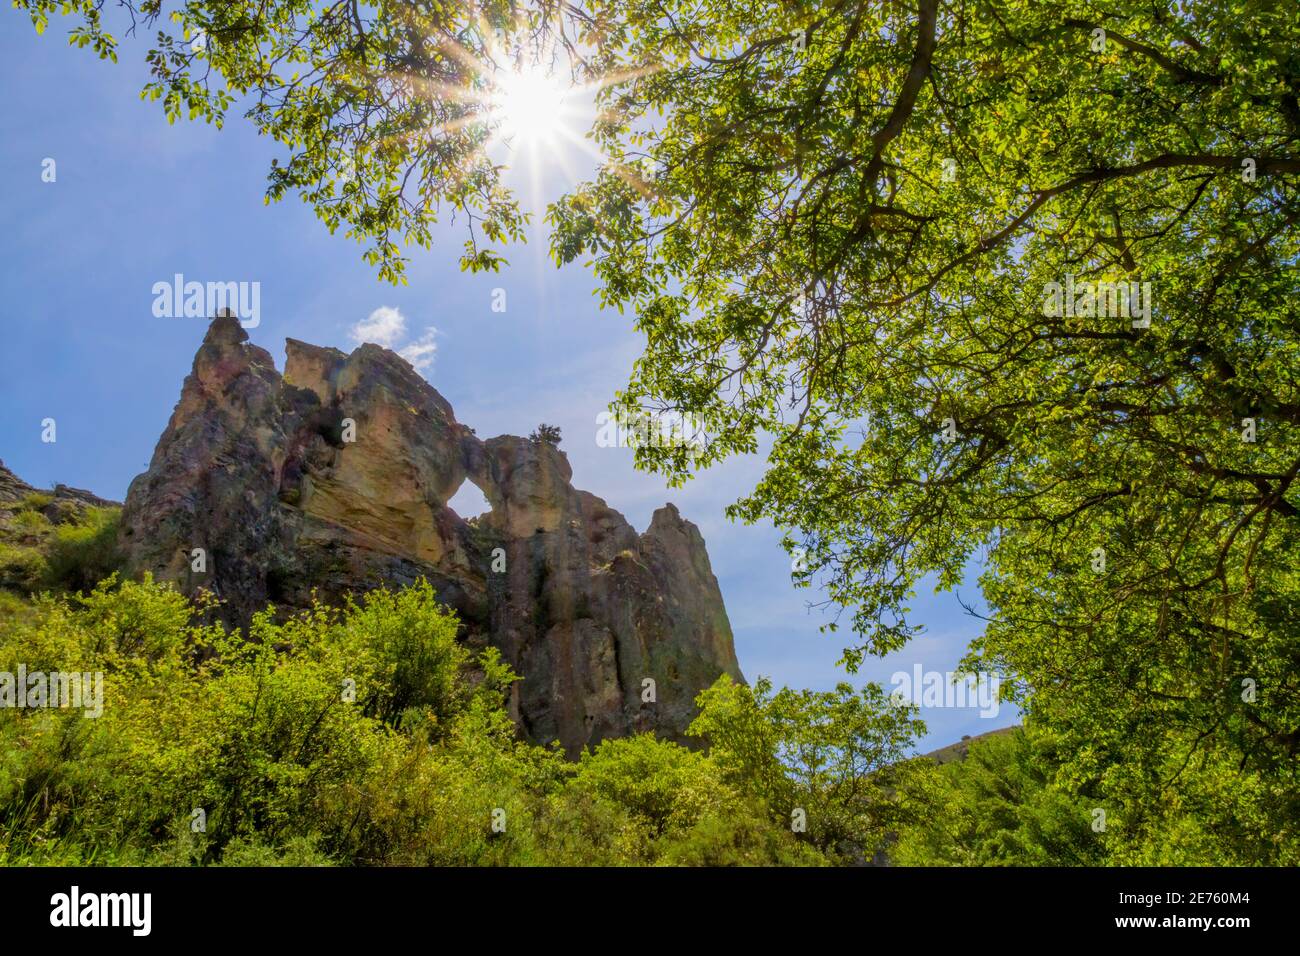 montagne rocheuse avec un trou au milieu vu à travers quelques arbres, dans la gorge de Peregrina en el Parque Natural del Rio Dulce, Guadalajara, Espagne Banque D'Images